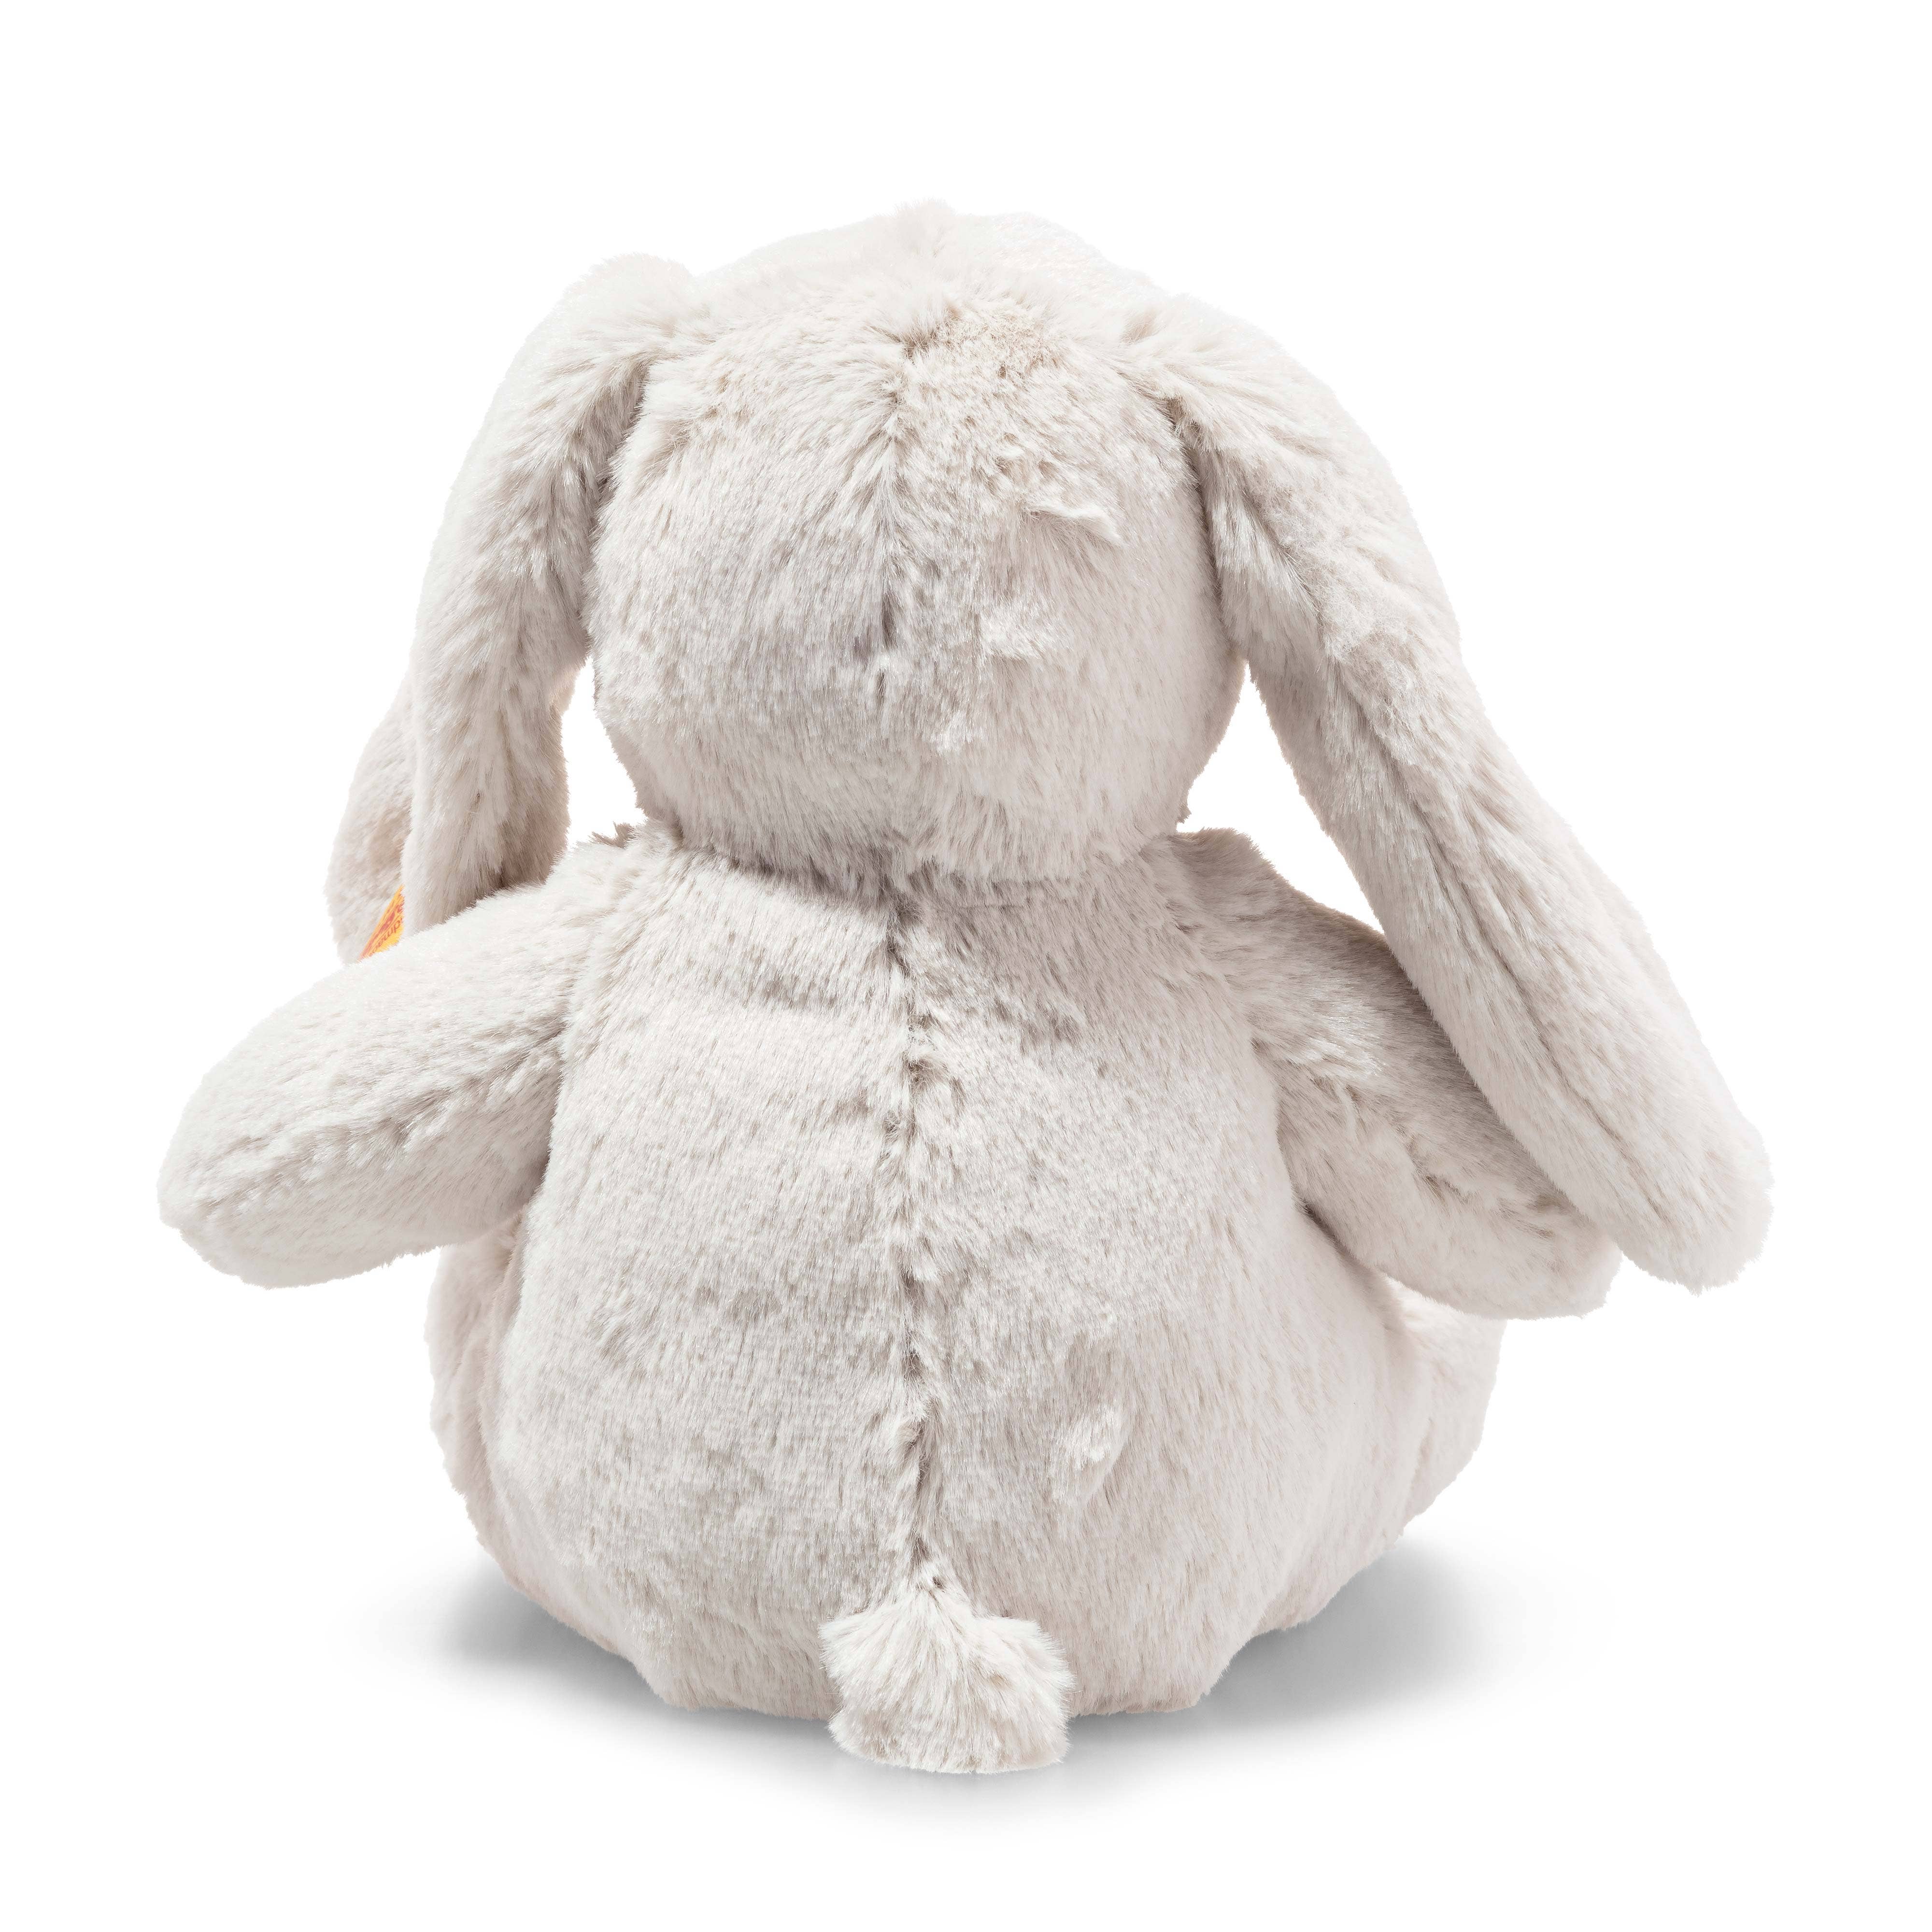 Hoppie Bunny Rabbit, 11 Inches